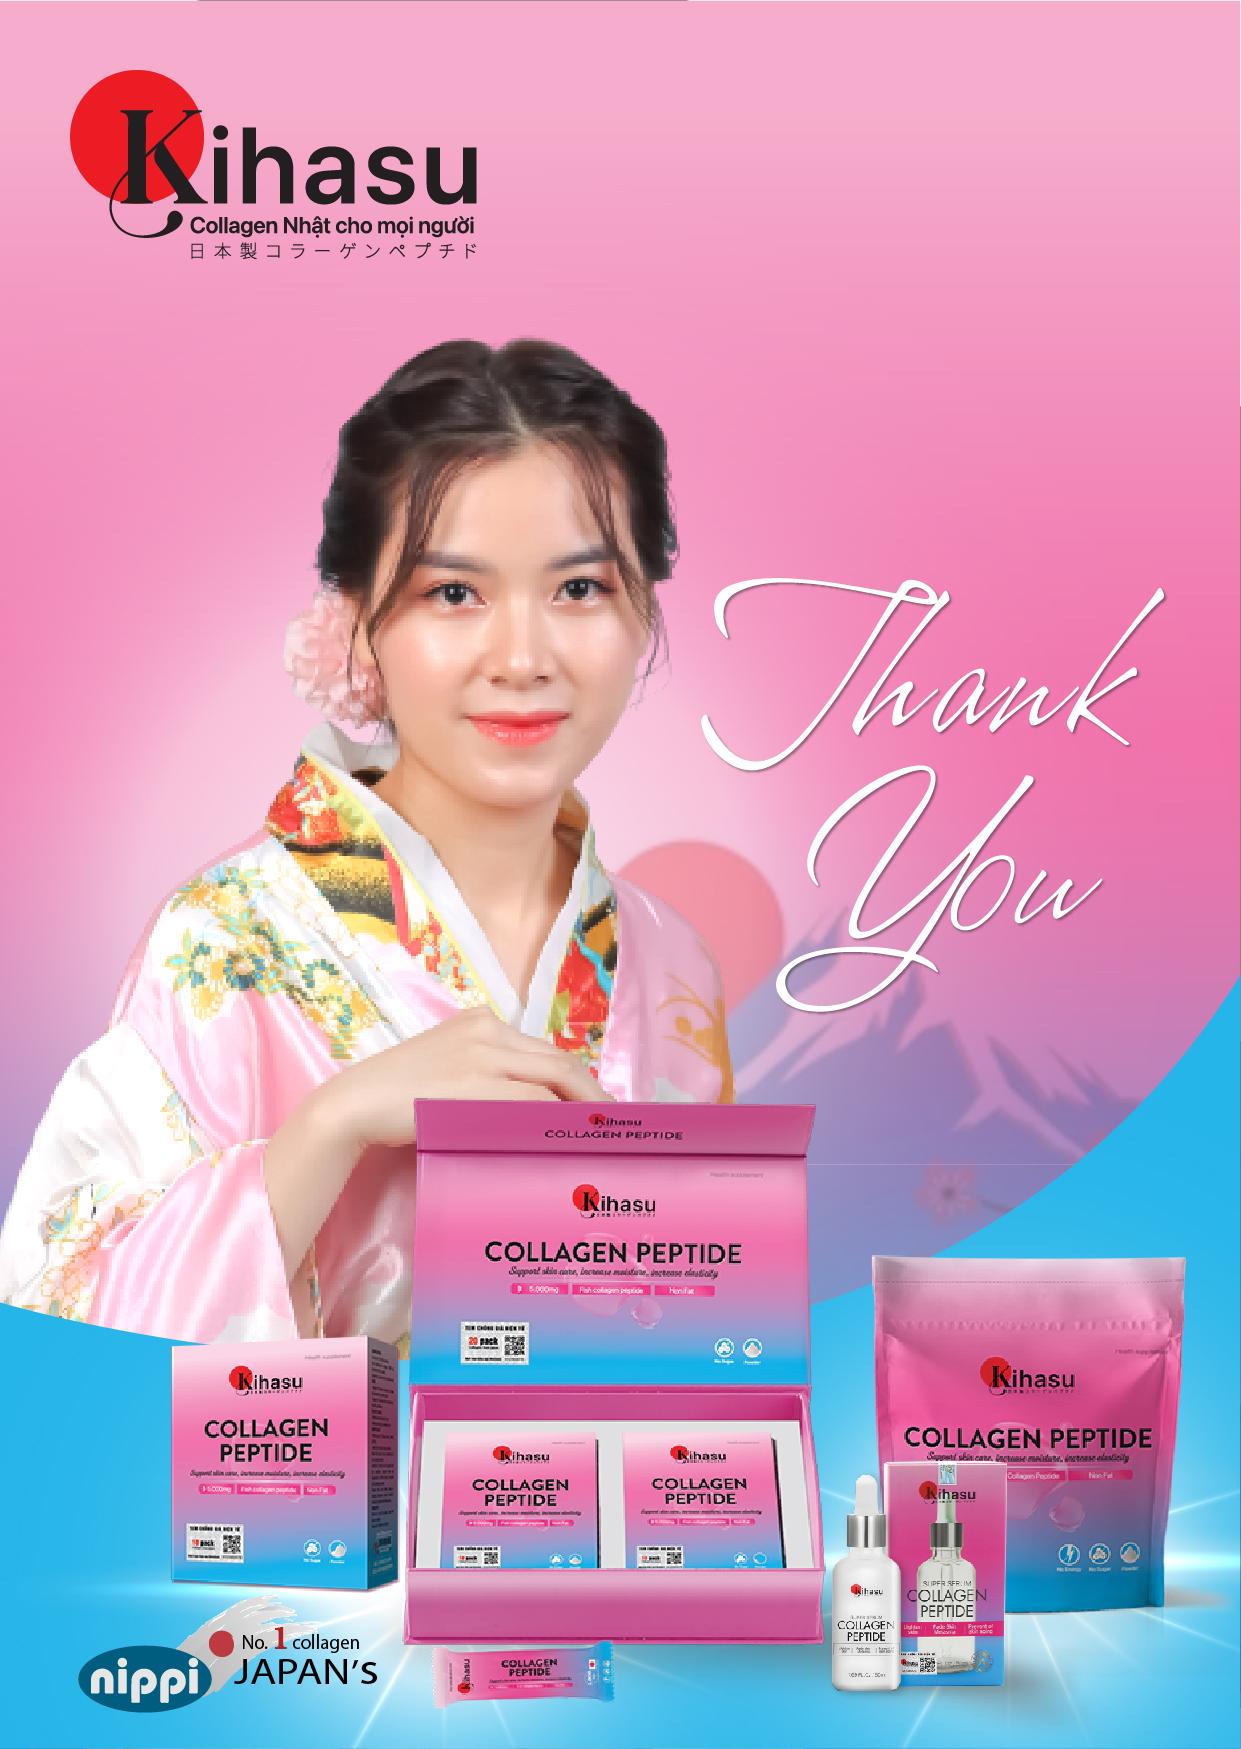 Thương hiệu Kihasu collagen “trình làng” thị trường Việt Nam dòng sản phẩm collagen đột phá - 1